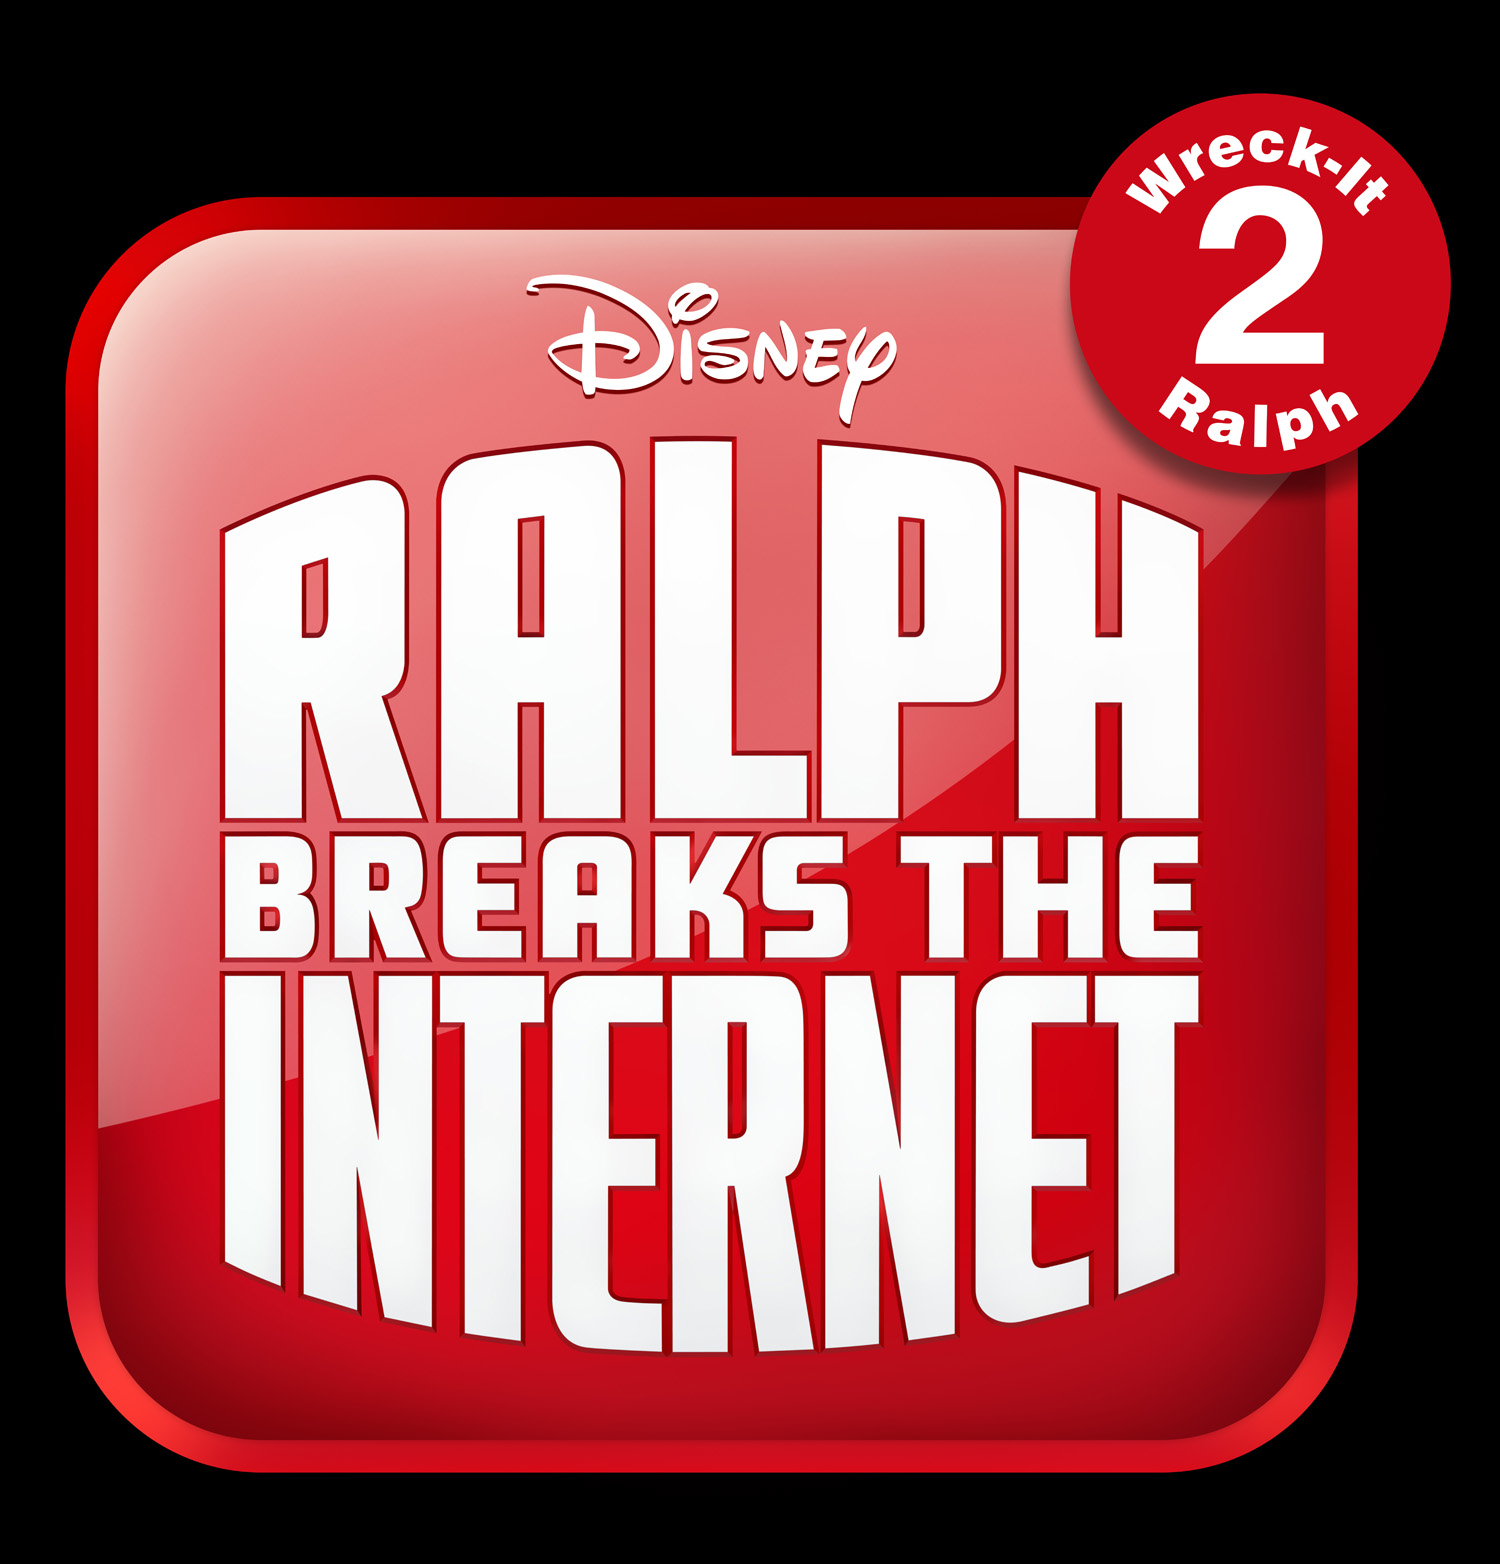 Wreck it ralph 2 breaks the internet